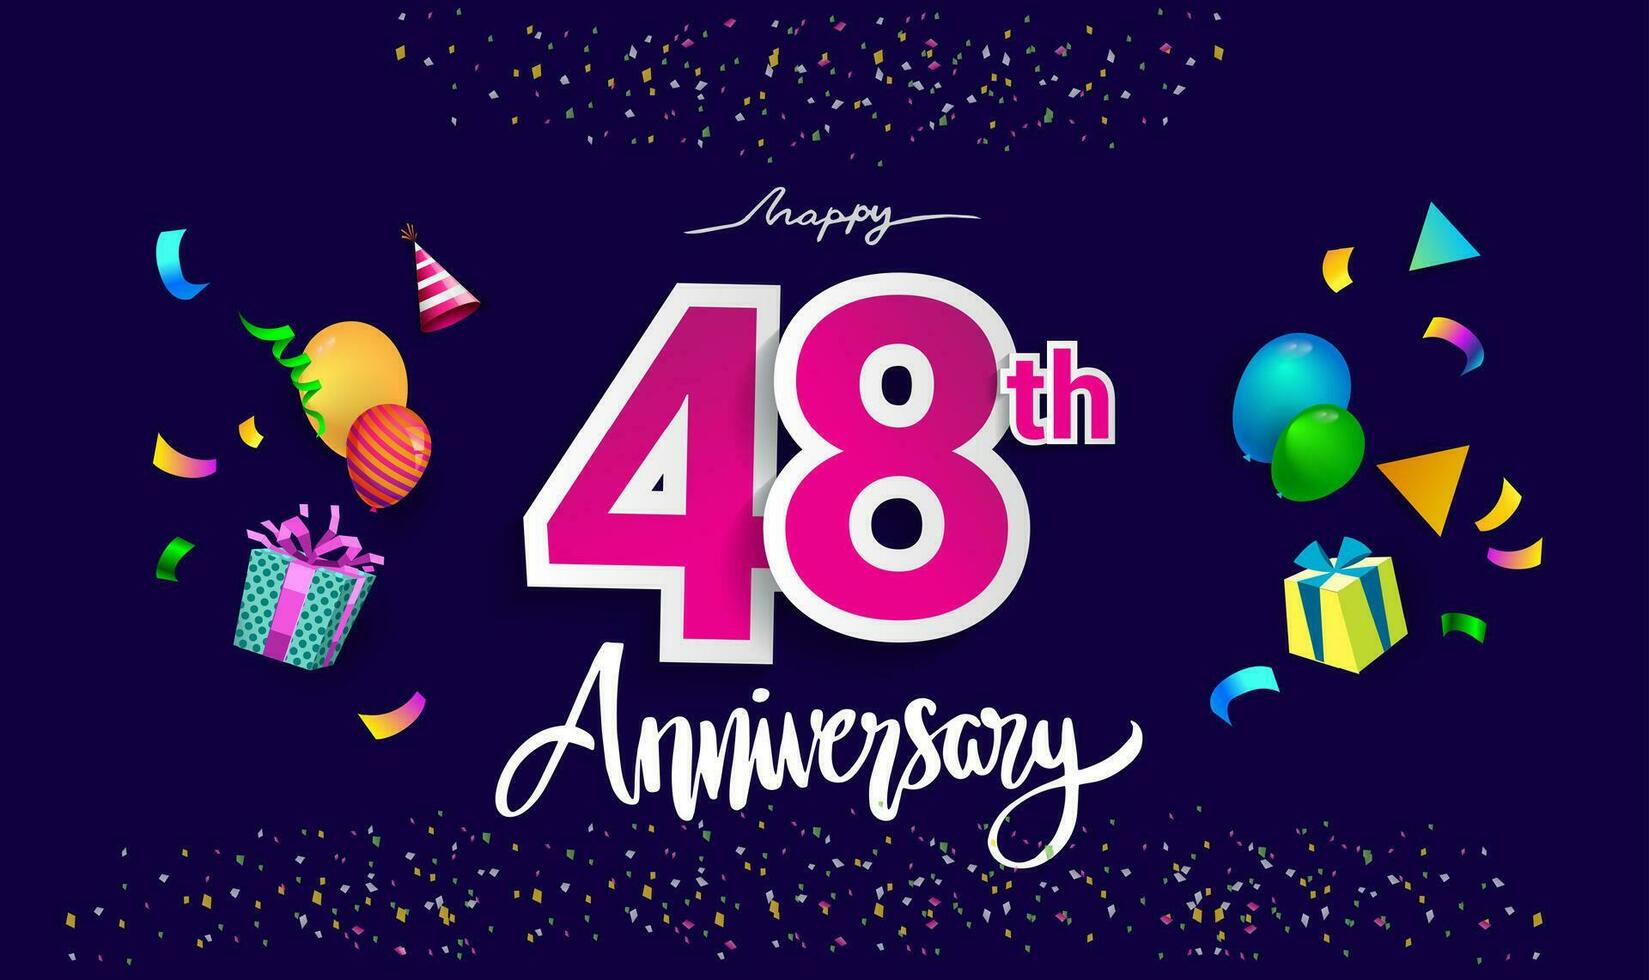 48ste jaren verjaardag viering ontwerp, met geschenk doos en ballonnen, lint, kleurrijk vector sjabloon elementen voor uw verjaardag vieren feest.